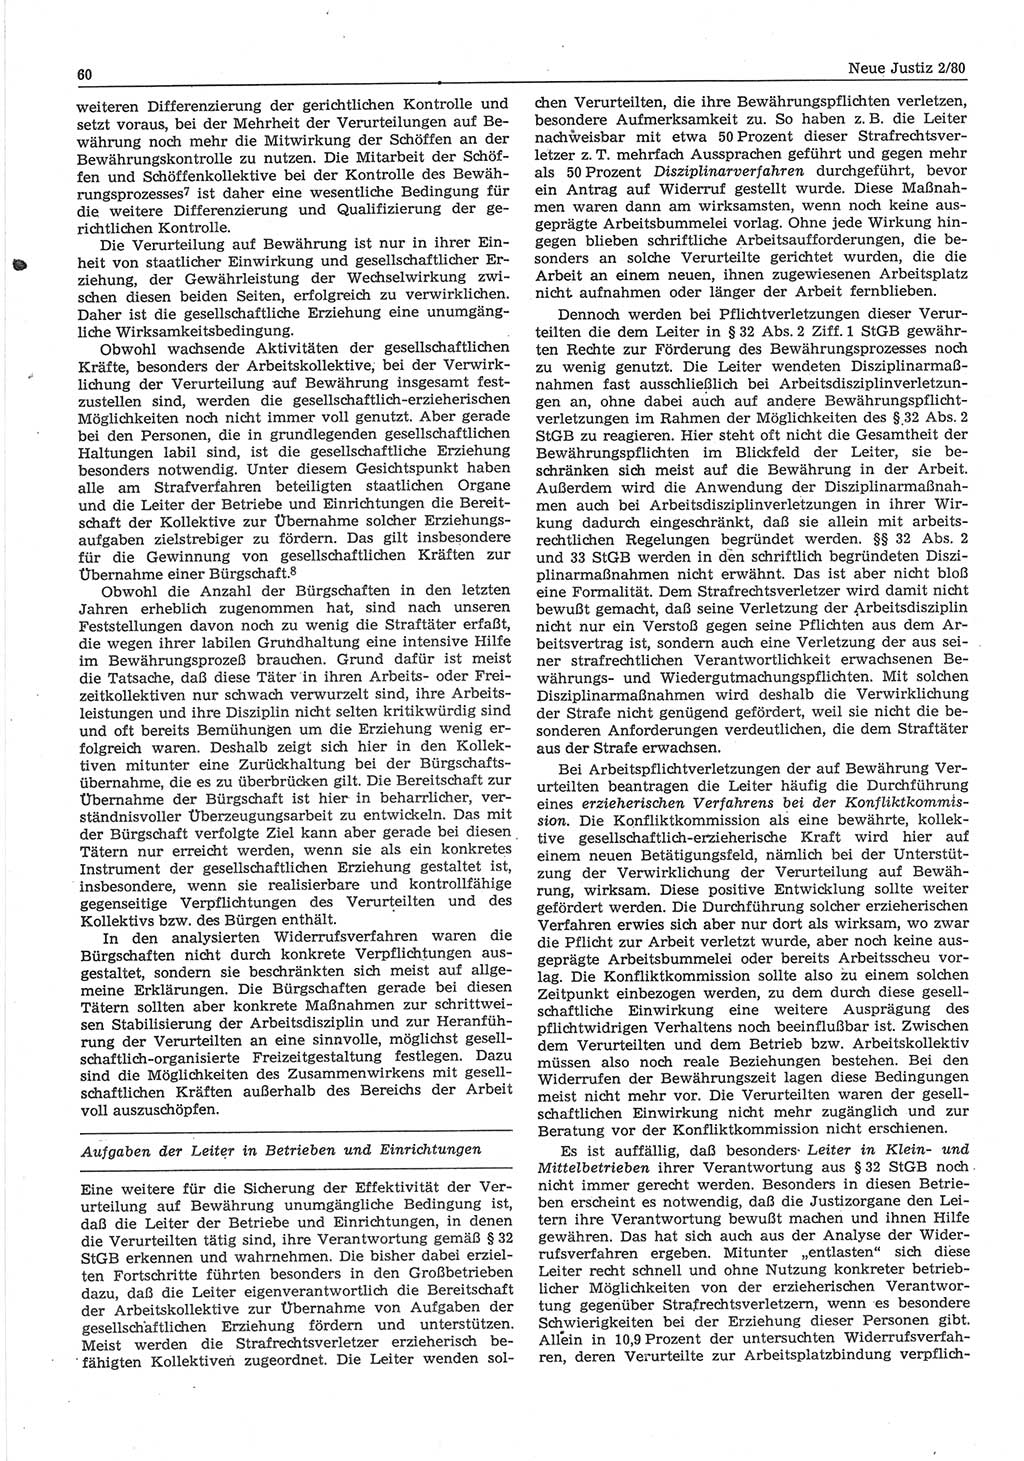 Neue Justiz (NJ), Zeitschrift für sozialistisches Recht und Gesetzlichkeit [Deutsche Demokratische Republik (DDR)], 34. Jahrgang 1980, Seite 60 (NJ DDR 1980, S. 60)